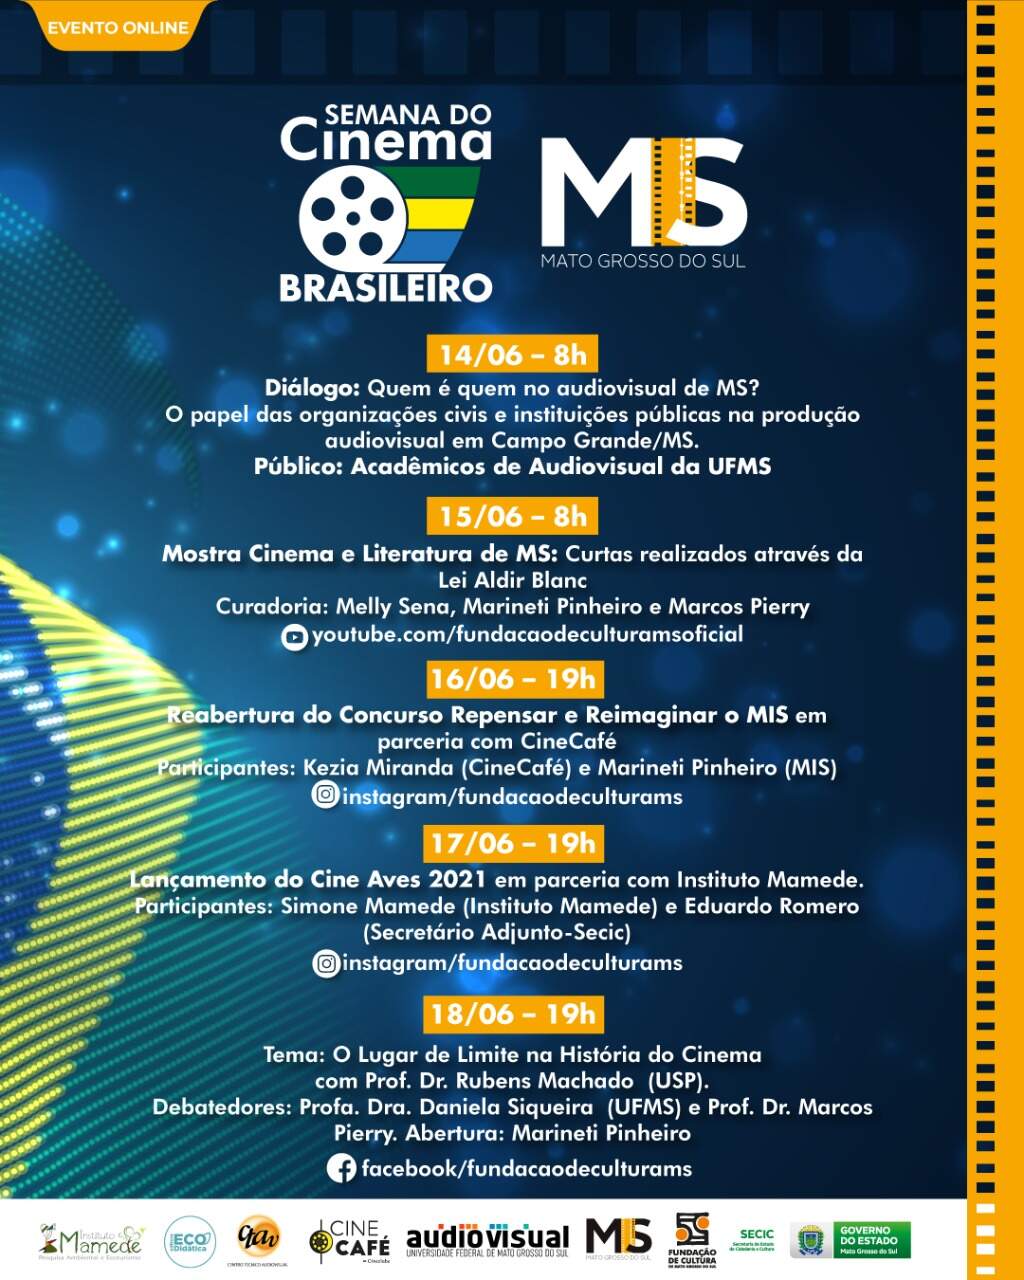 programacao da semana do cinema brasileiro - Semana do Cinema Brasileiro do MIS tem programação gratuita online com debates, concurso e exibições